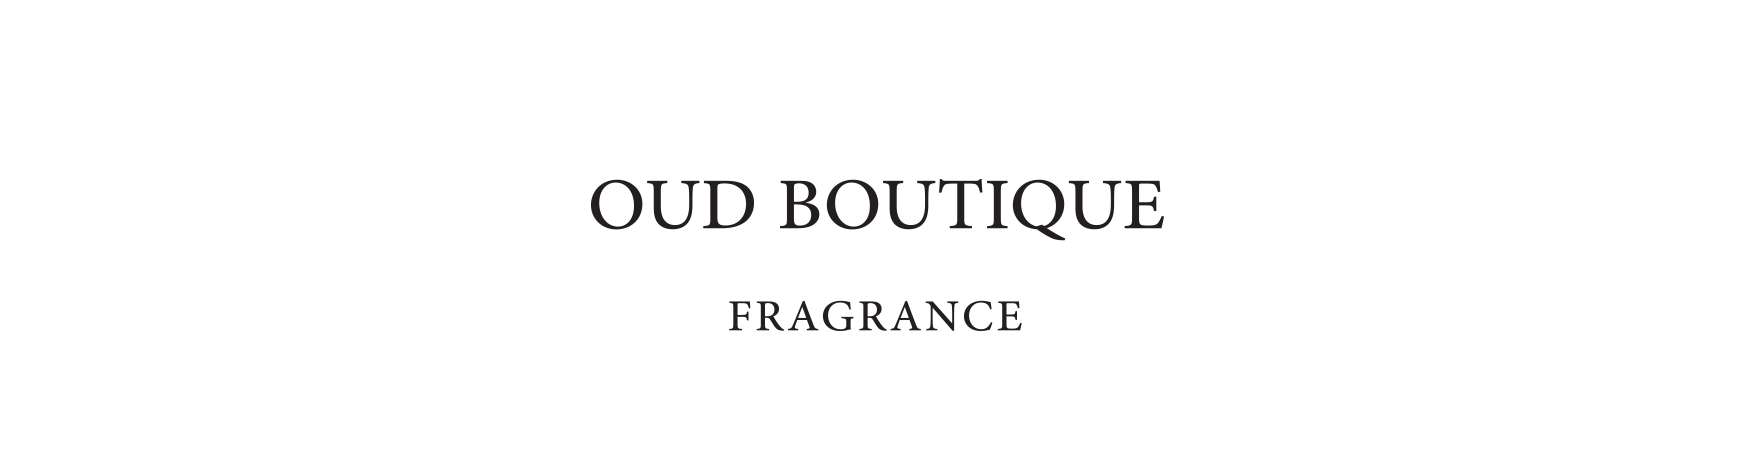 Oud Boutique